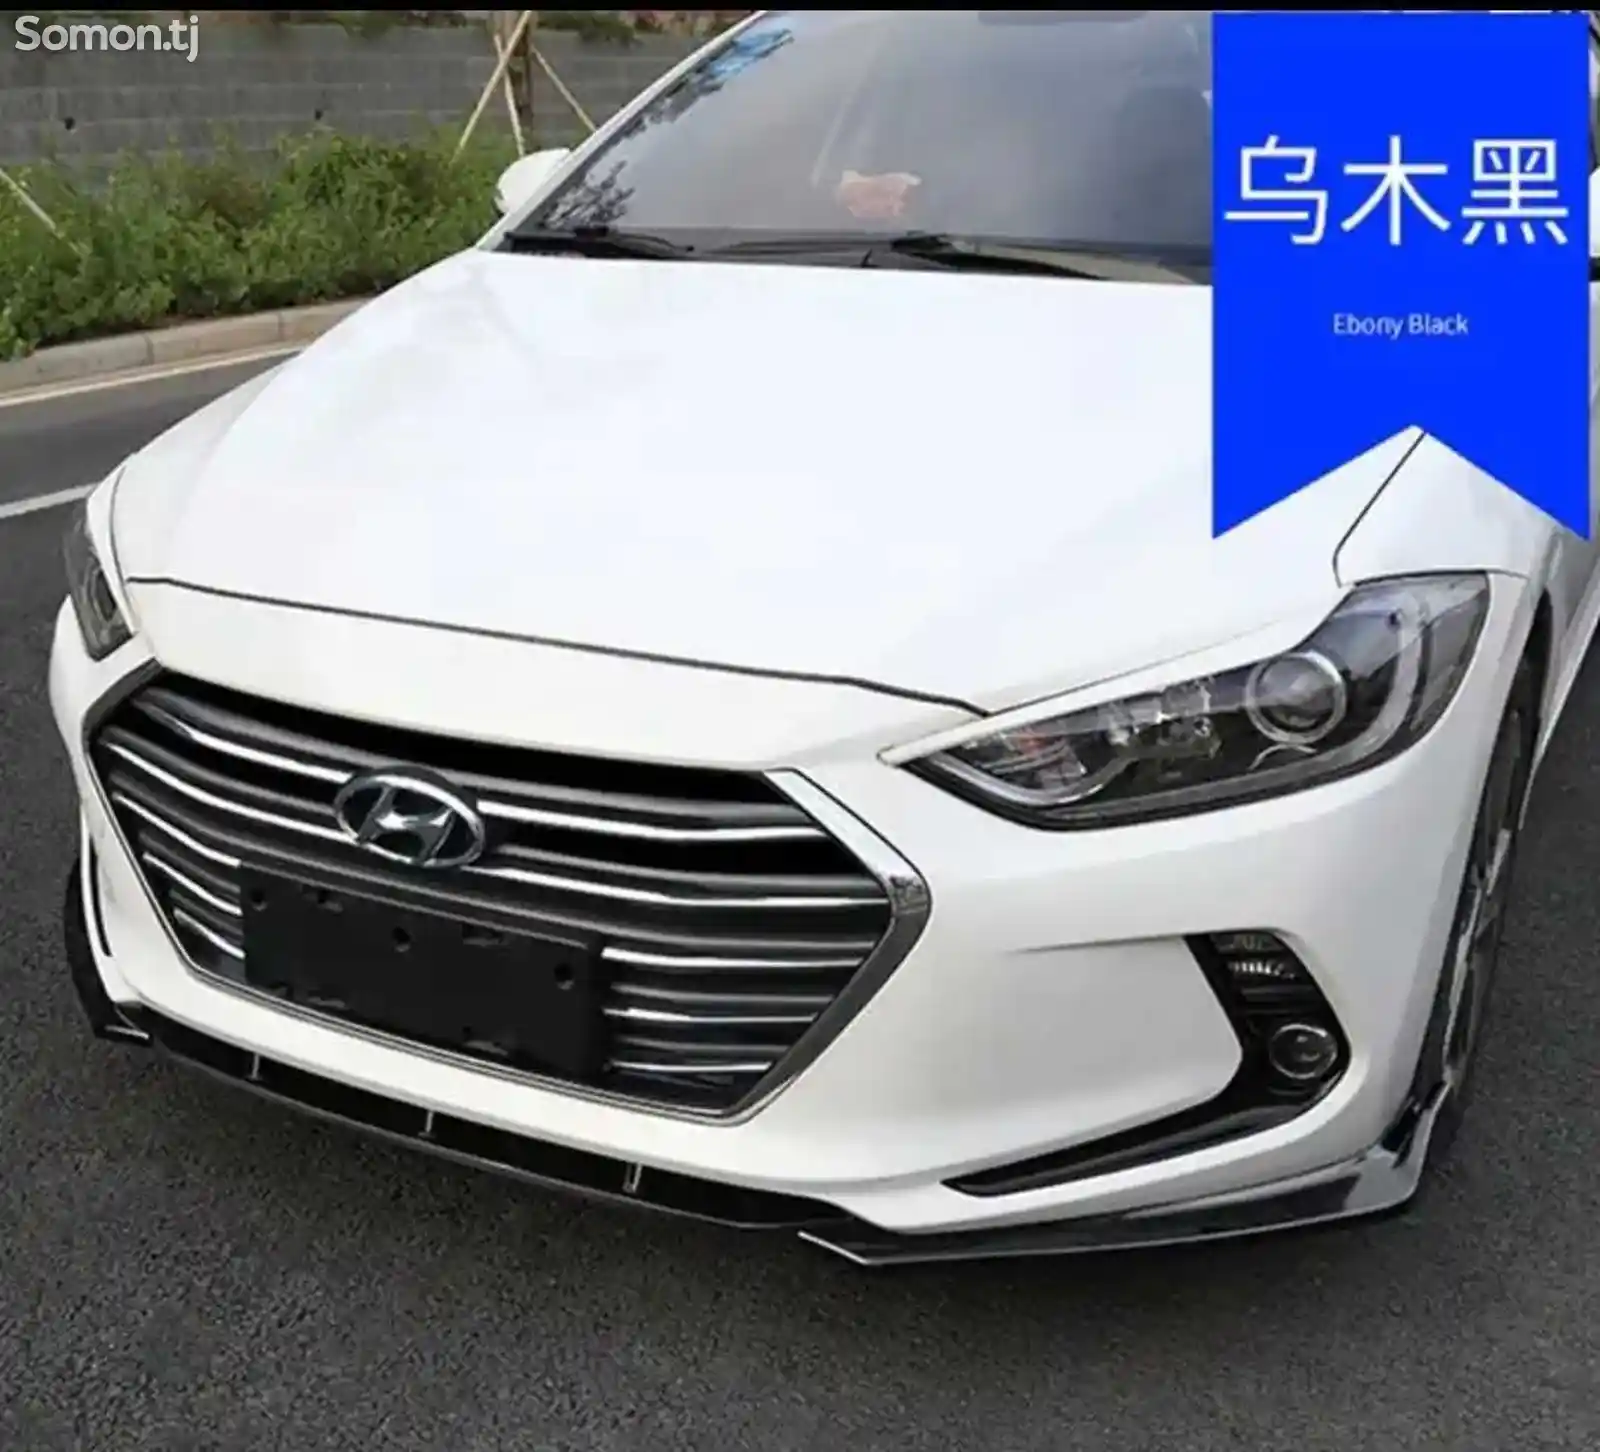 Губа от Hyundai Elantra avante 2016-2020-4